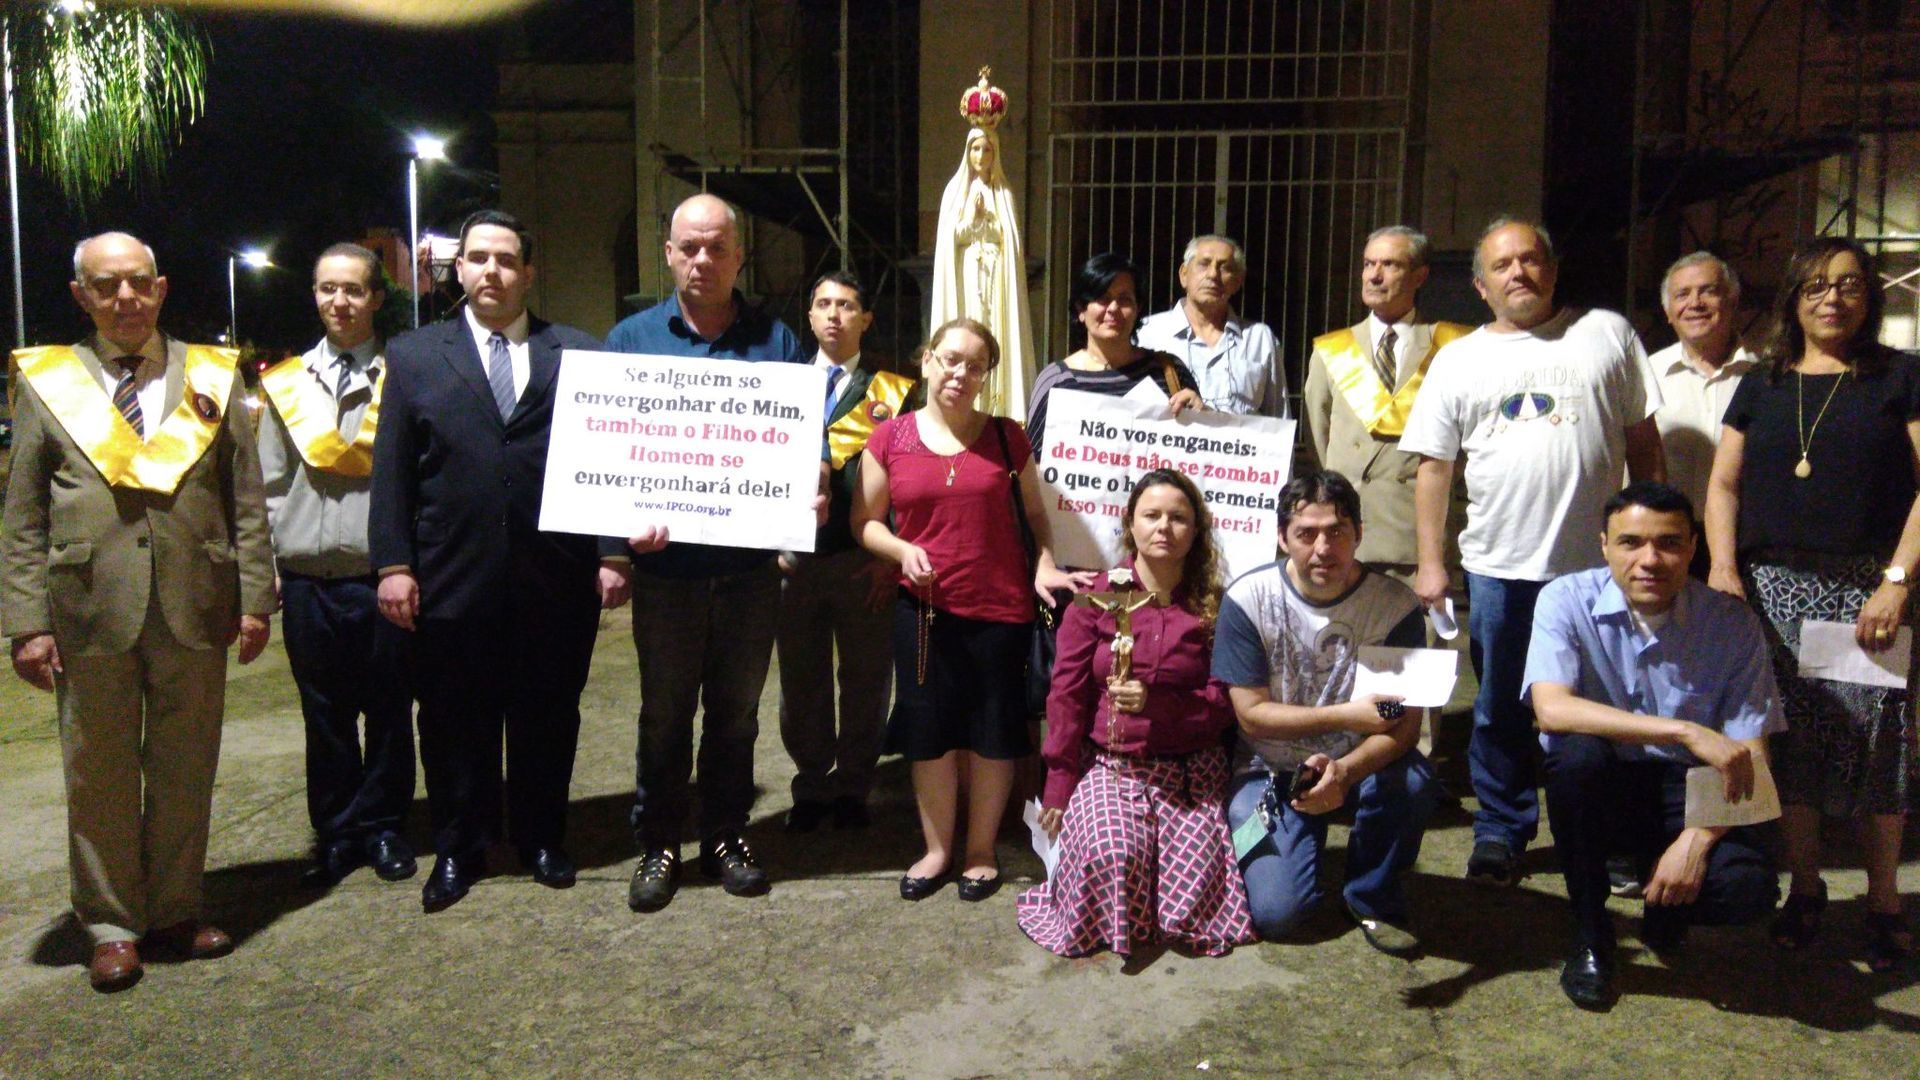 Belo Horizonte promove Terço Público de reparação pela peça “O Evangelho Segundo Jesus, Rainha do Céu”